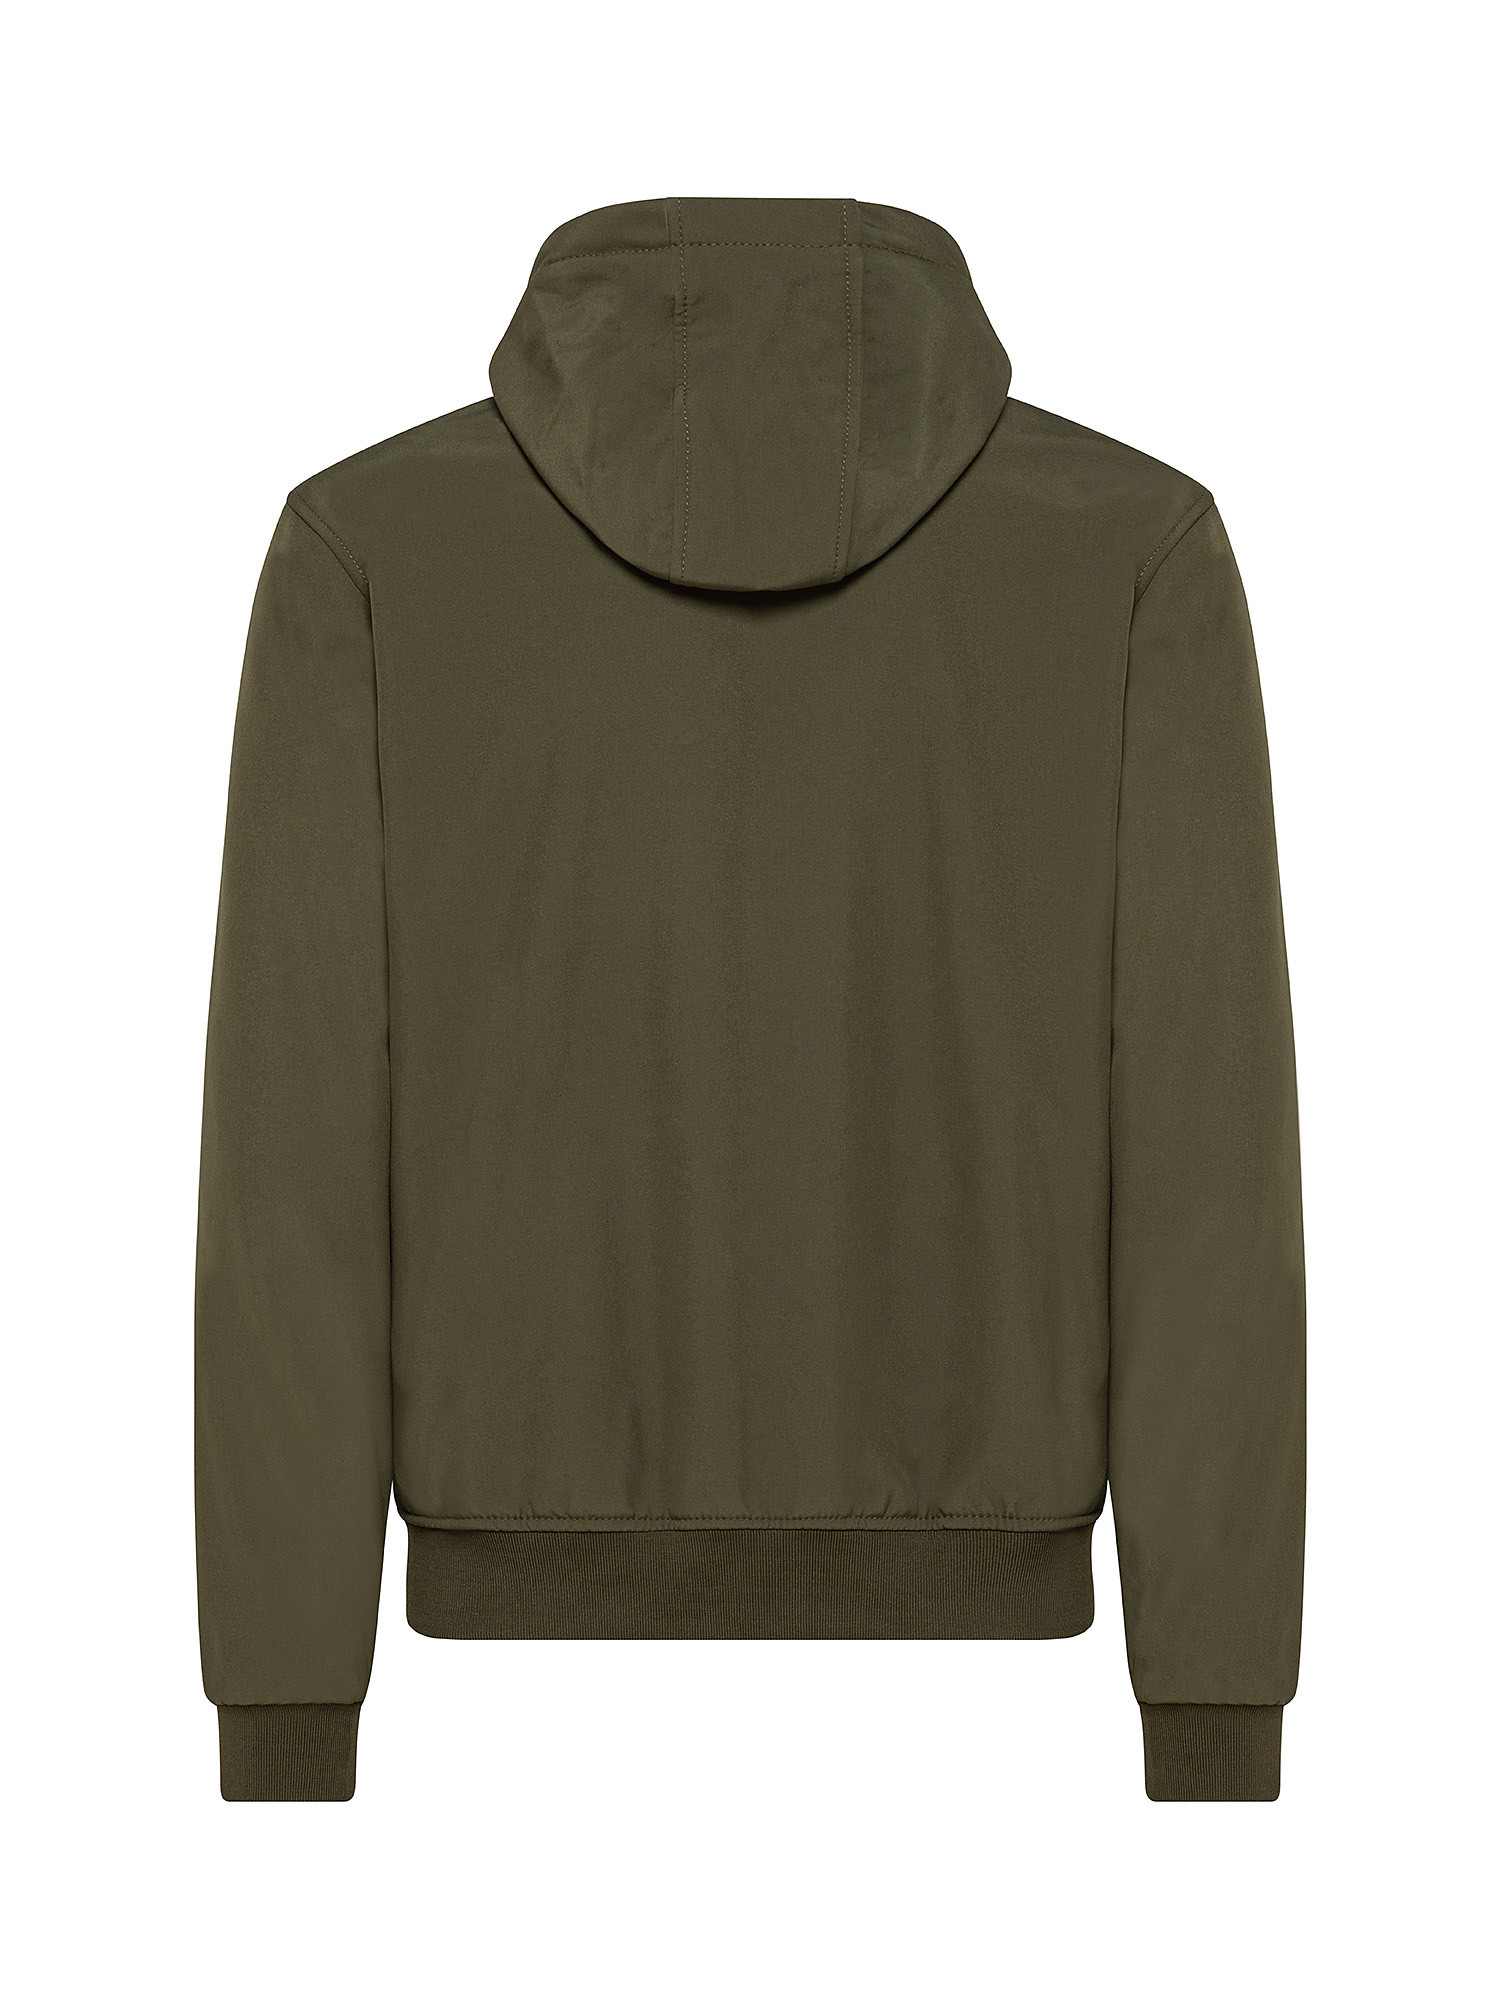 Hooded jacket, Olive Green, large image number 1